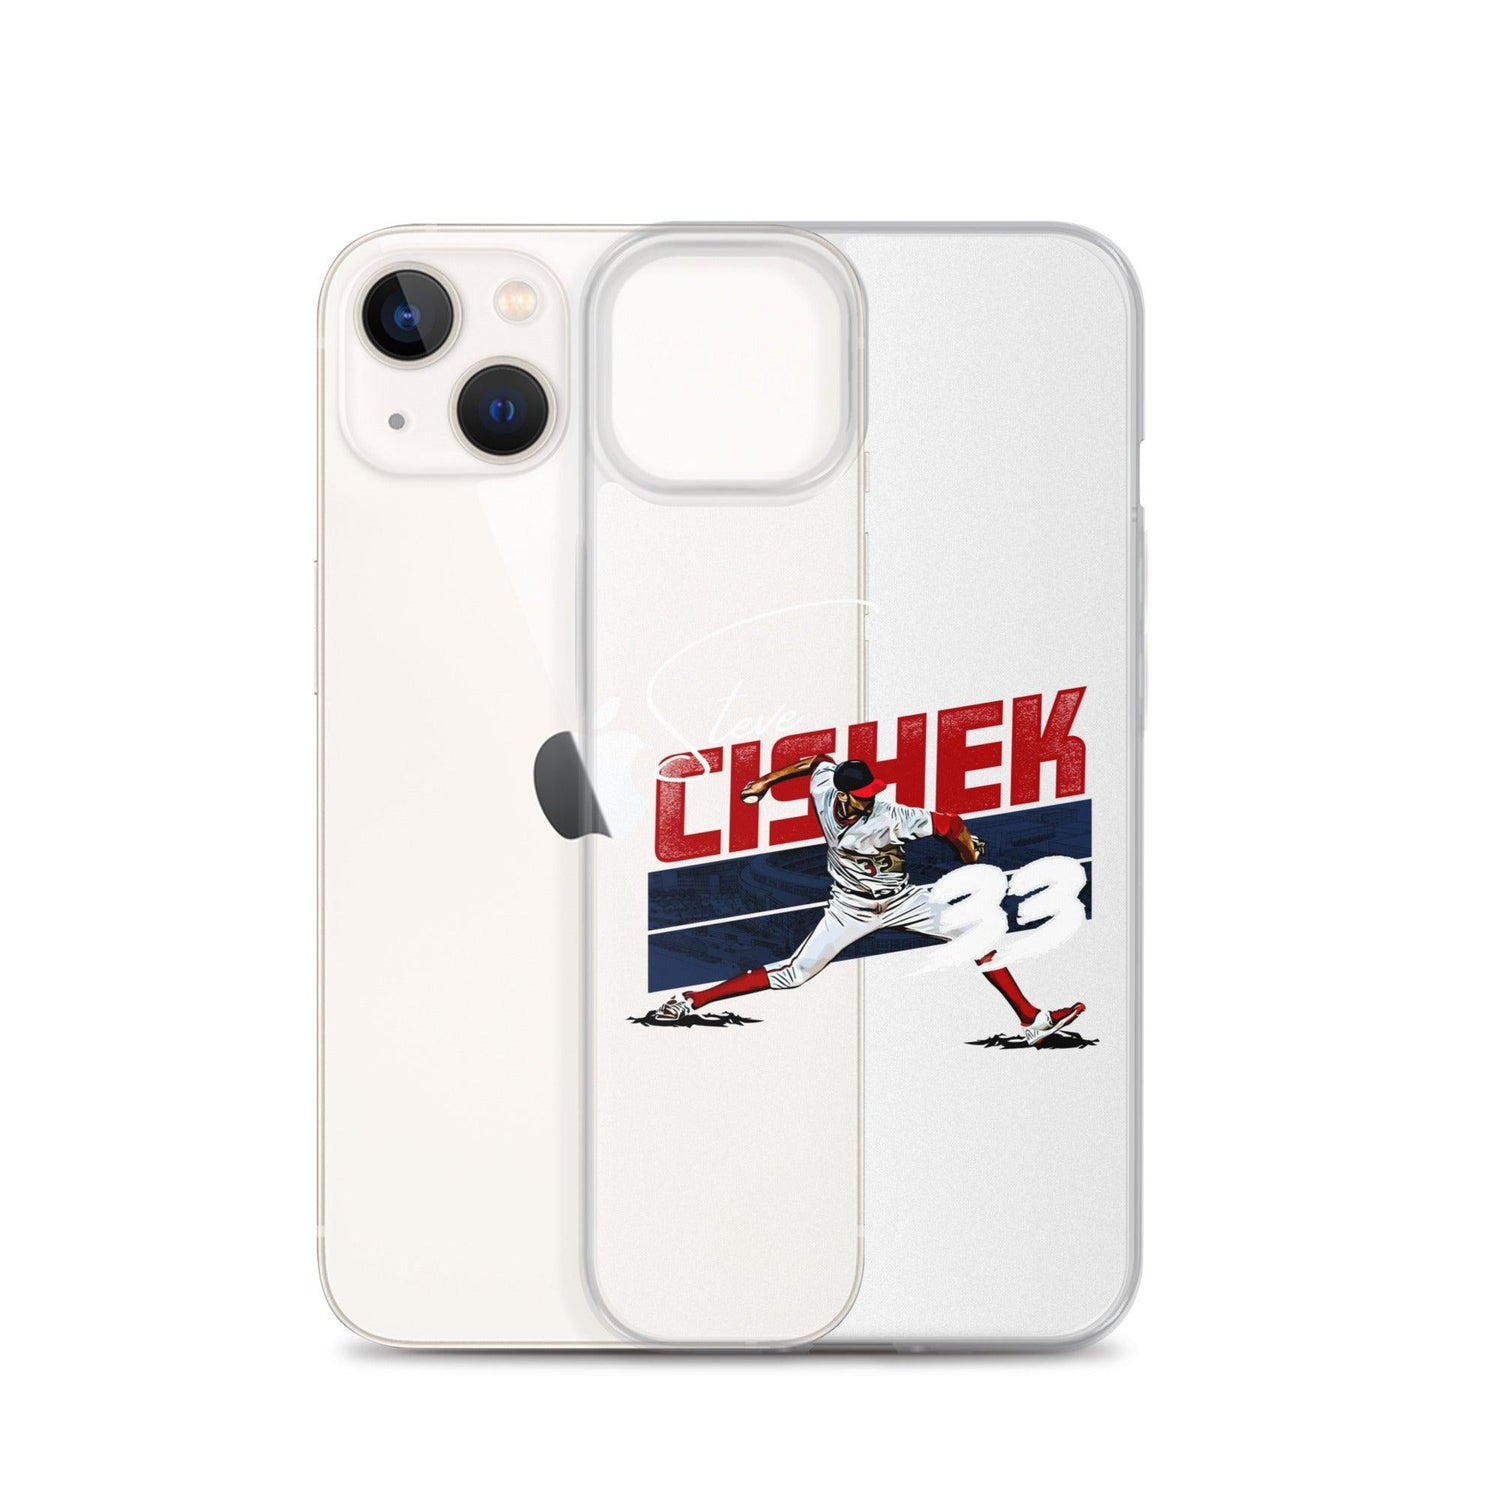 Steve Cishek "33" iPhone Case - Fan Arch